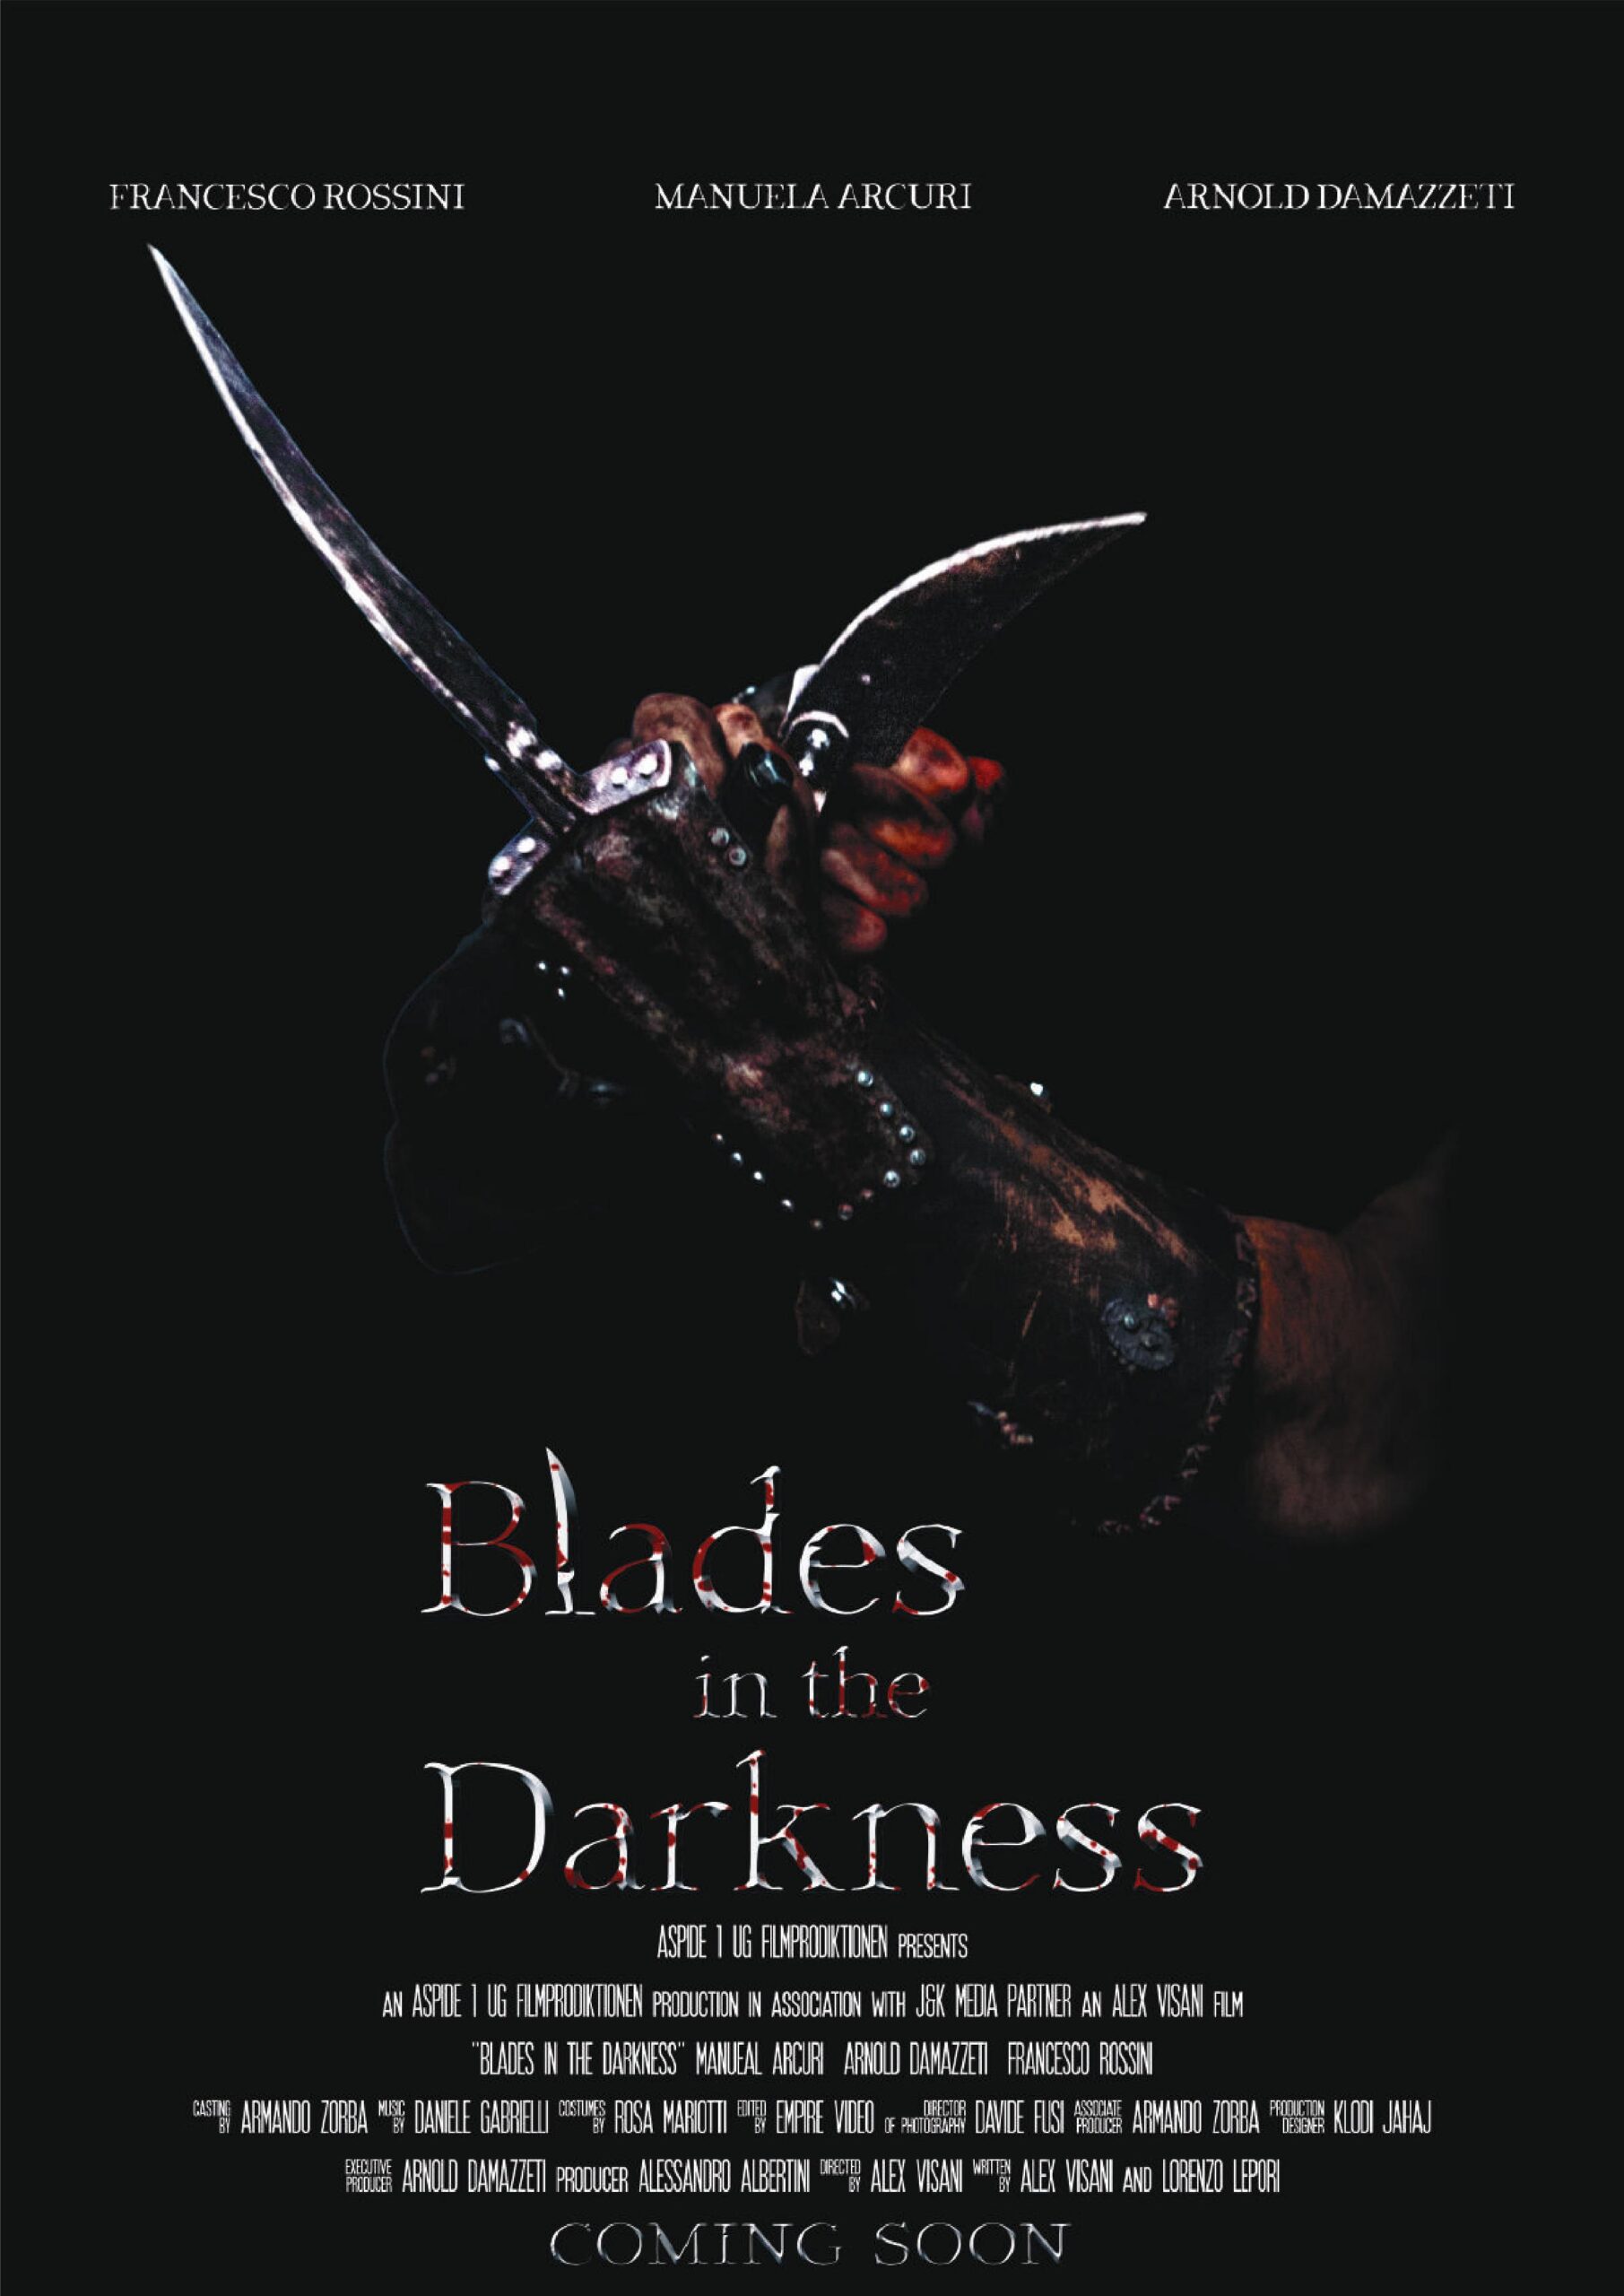 [NEWS] Blades in the Darkness di Alex Visani titolato in Italia Gli Artigli dell’aquila. La locandina